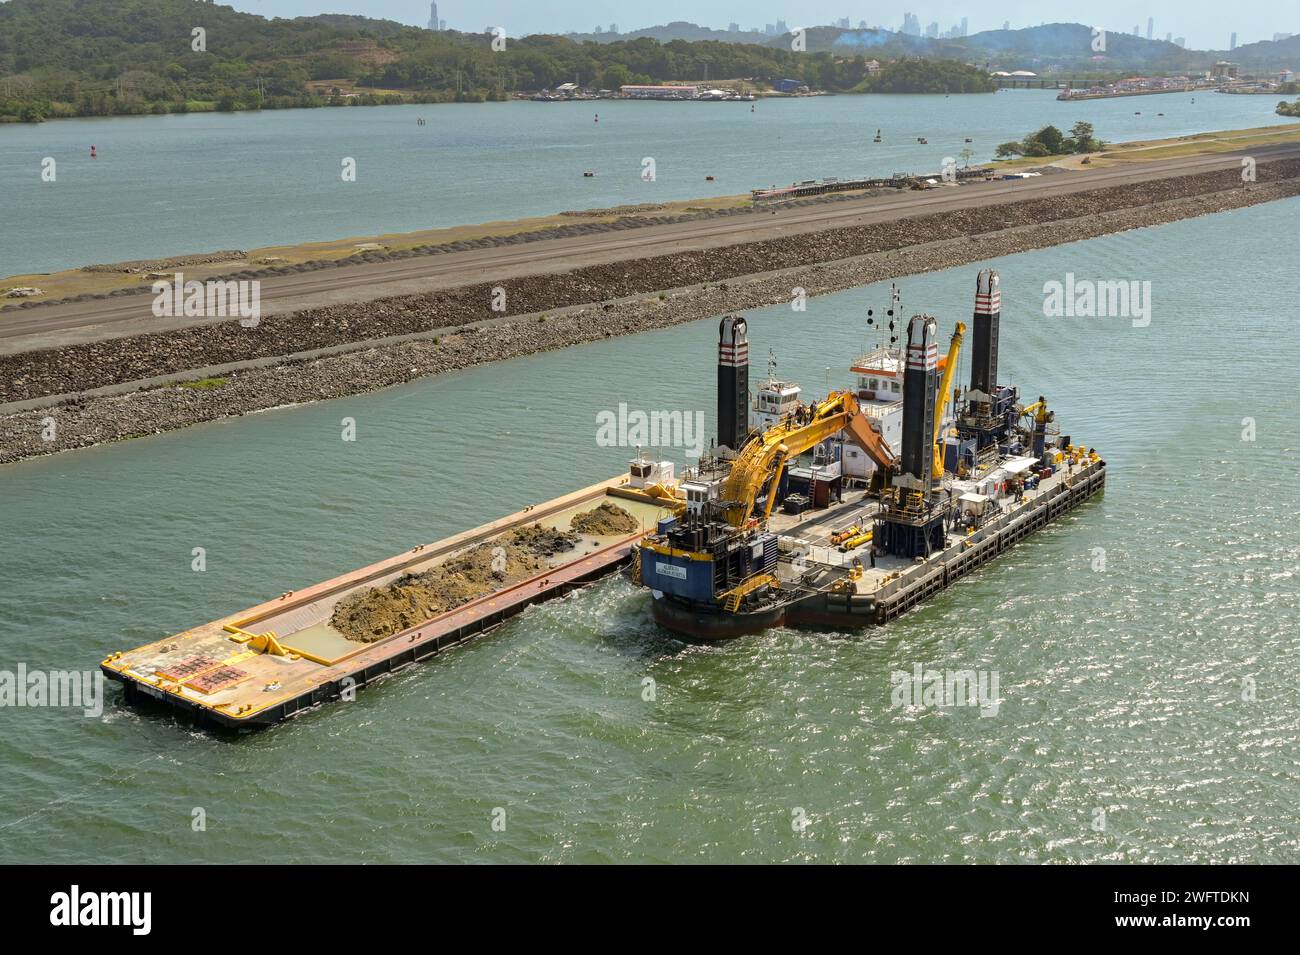 Canale di Panama, Panama - 23 gennaio 2024: Grande chiatta industriale galleggiante utilizzata per dragare il canale per rimuovere limo, fango e sporco. Foto Stock